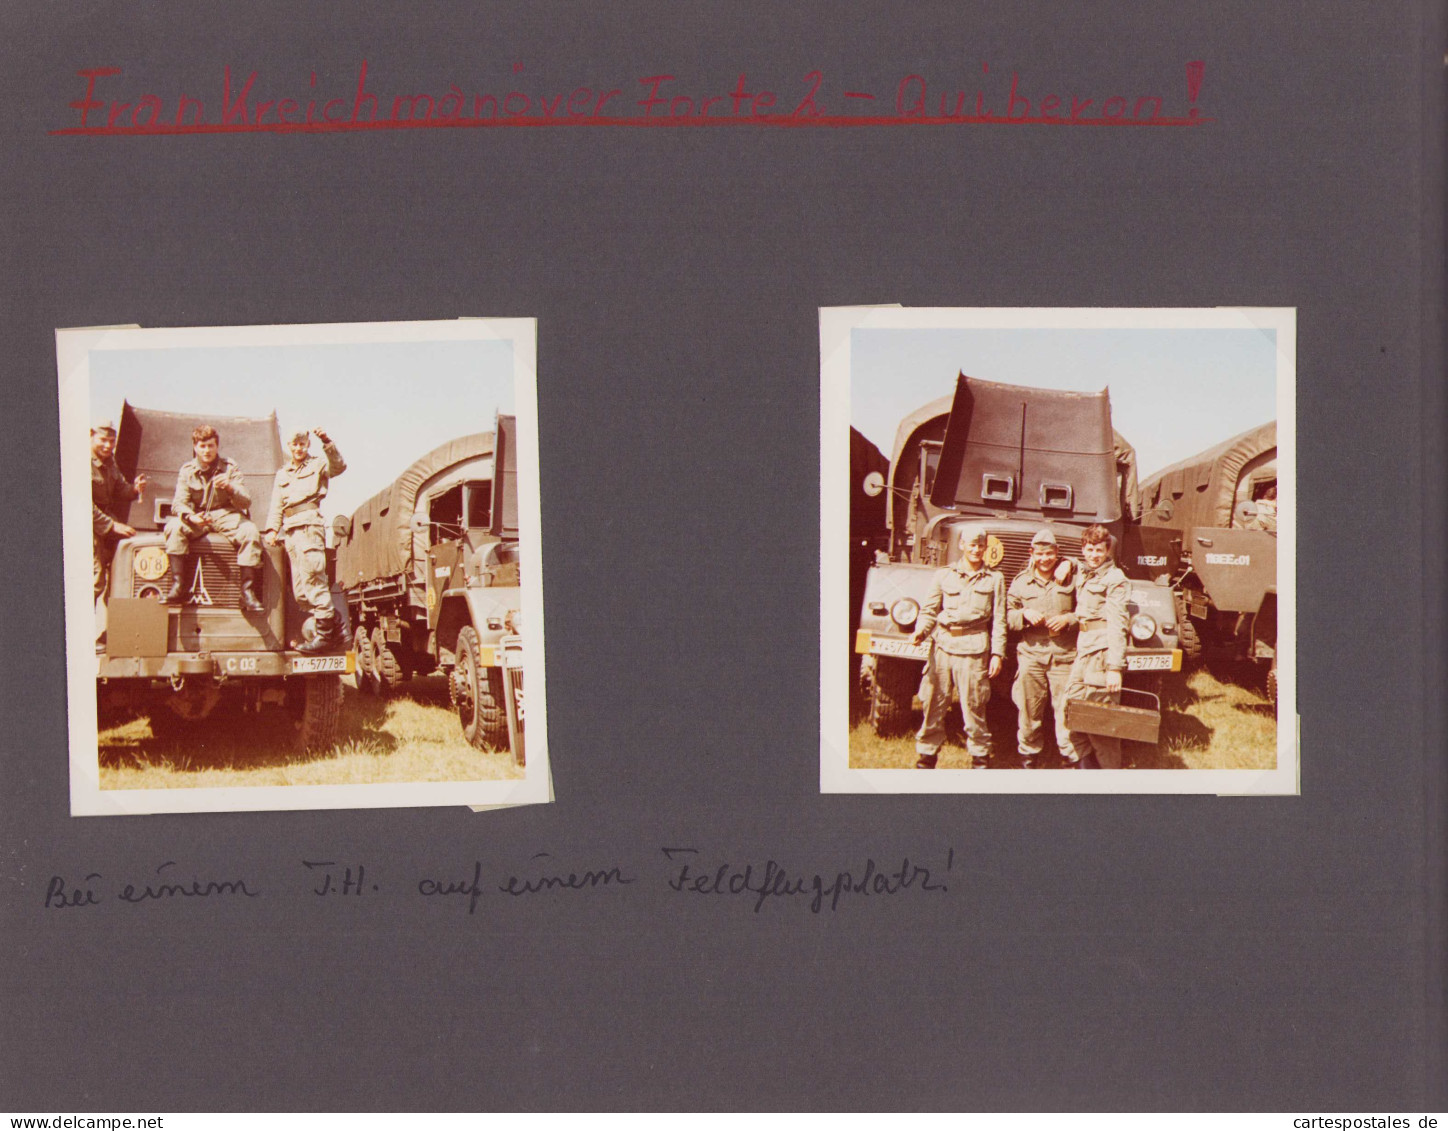 Fotoalbum 133 Fotografien Bundeswehr und Technik, Panzer, LKW, Uniform, MG, Amphibienfahrzeug, Frankreich Quiberon 